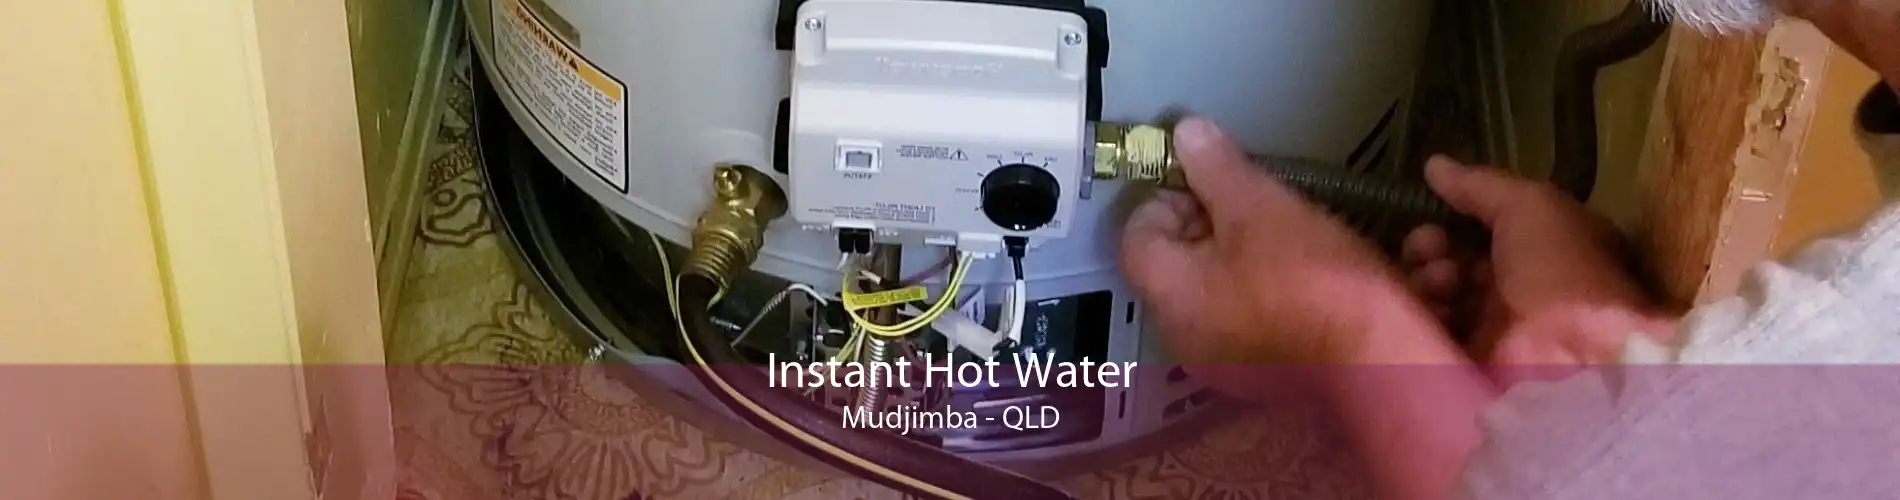 Instant Hot Water Mudjimba - QLD